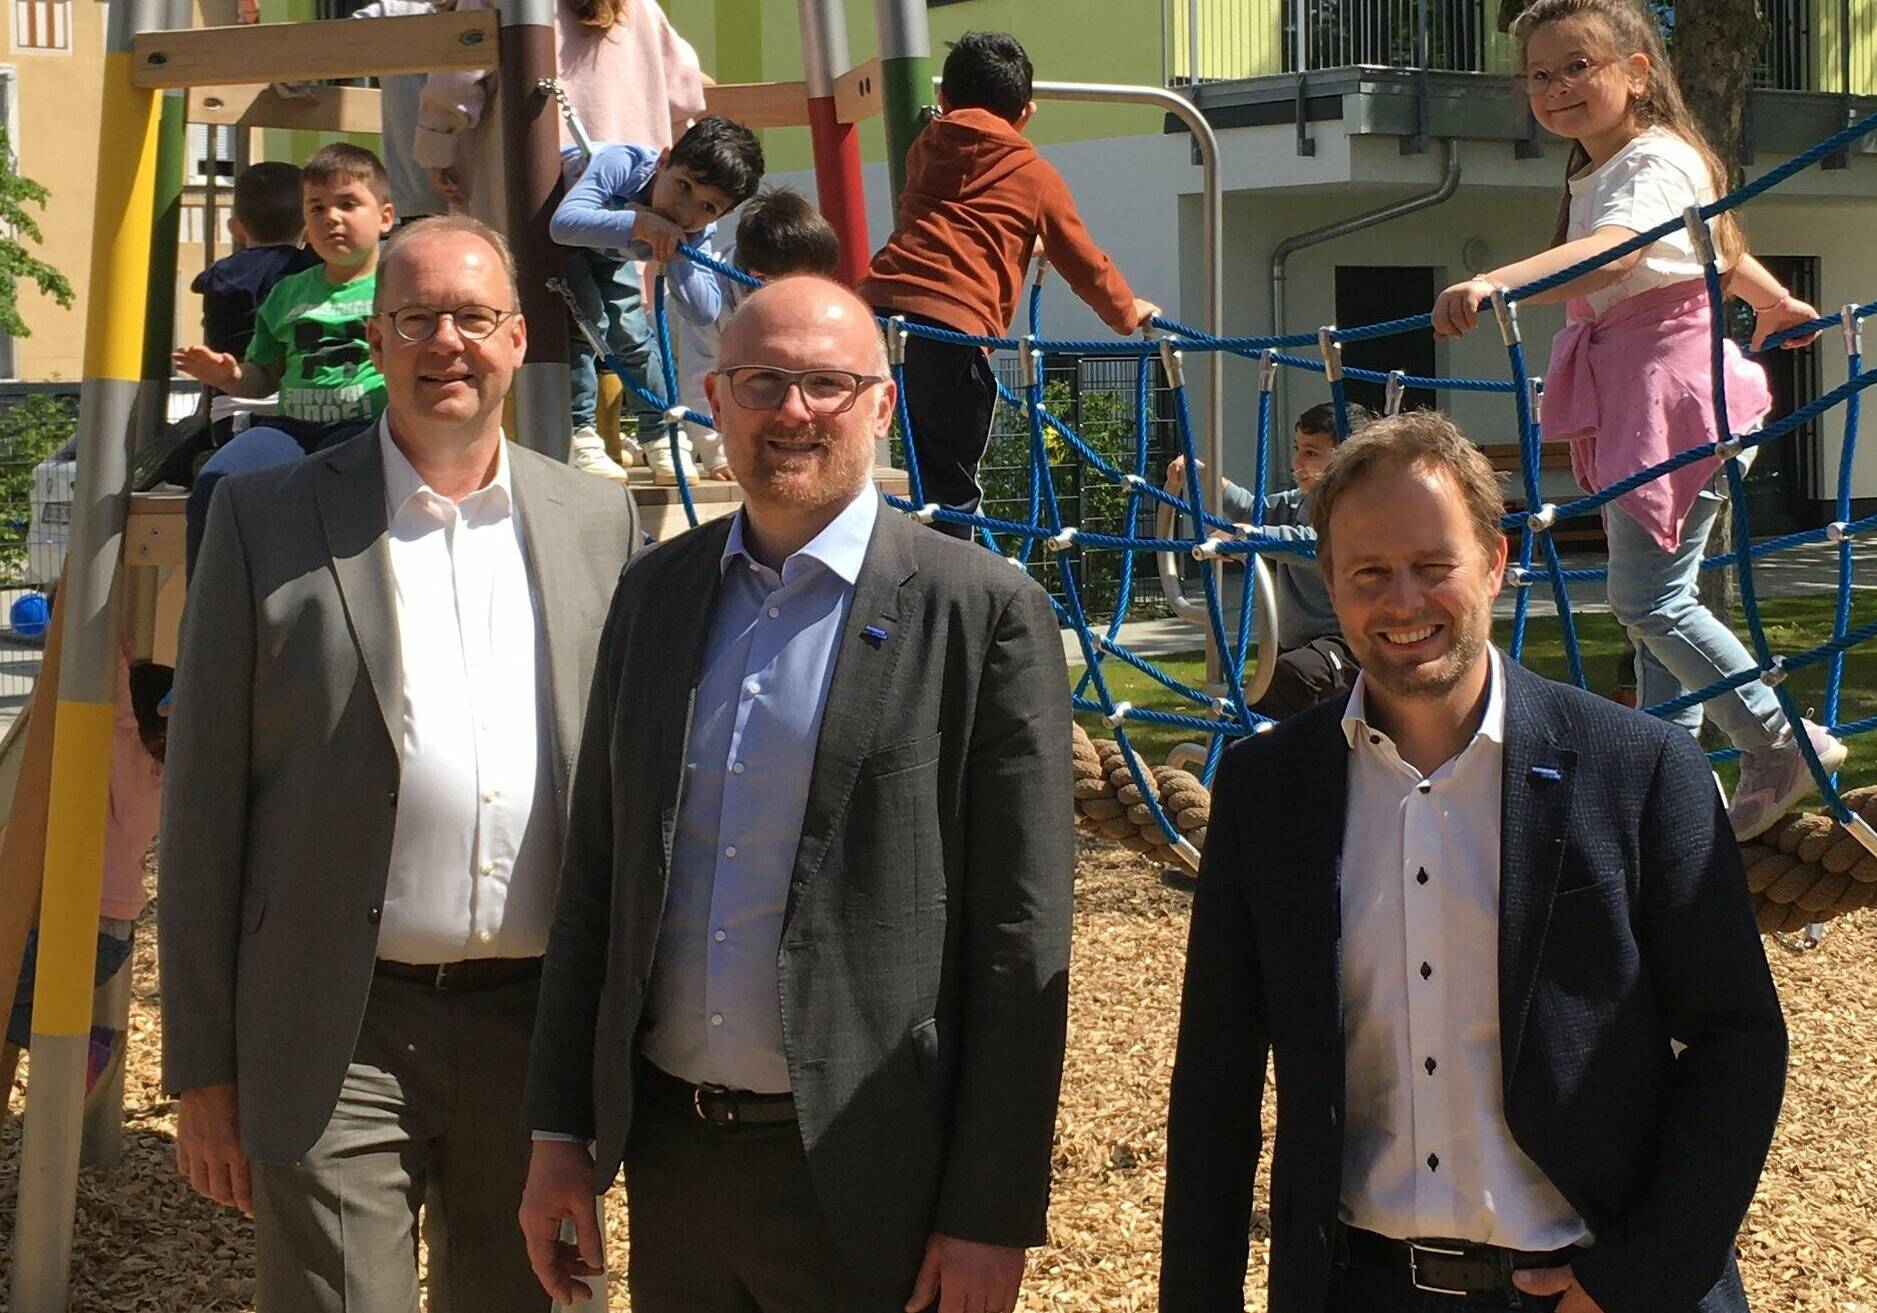  Oberbürgermeister Sören Link (M.) mit Gebag-Chef Bernd Wortmeyer (l.) und Stadtdirektor/Kämmerer Martin Murrack, der auch fürs Kita-Sondervermögen zuständig ist, bei der Eröffnung der Kita. 